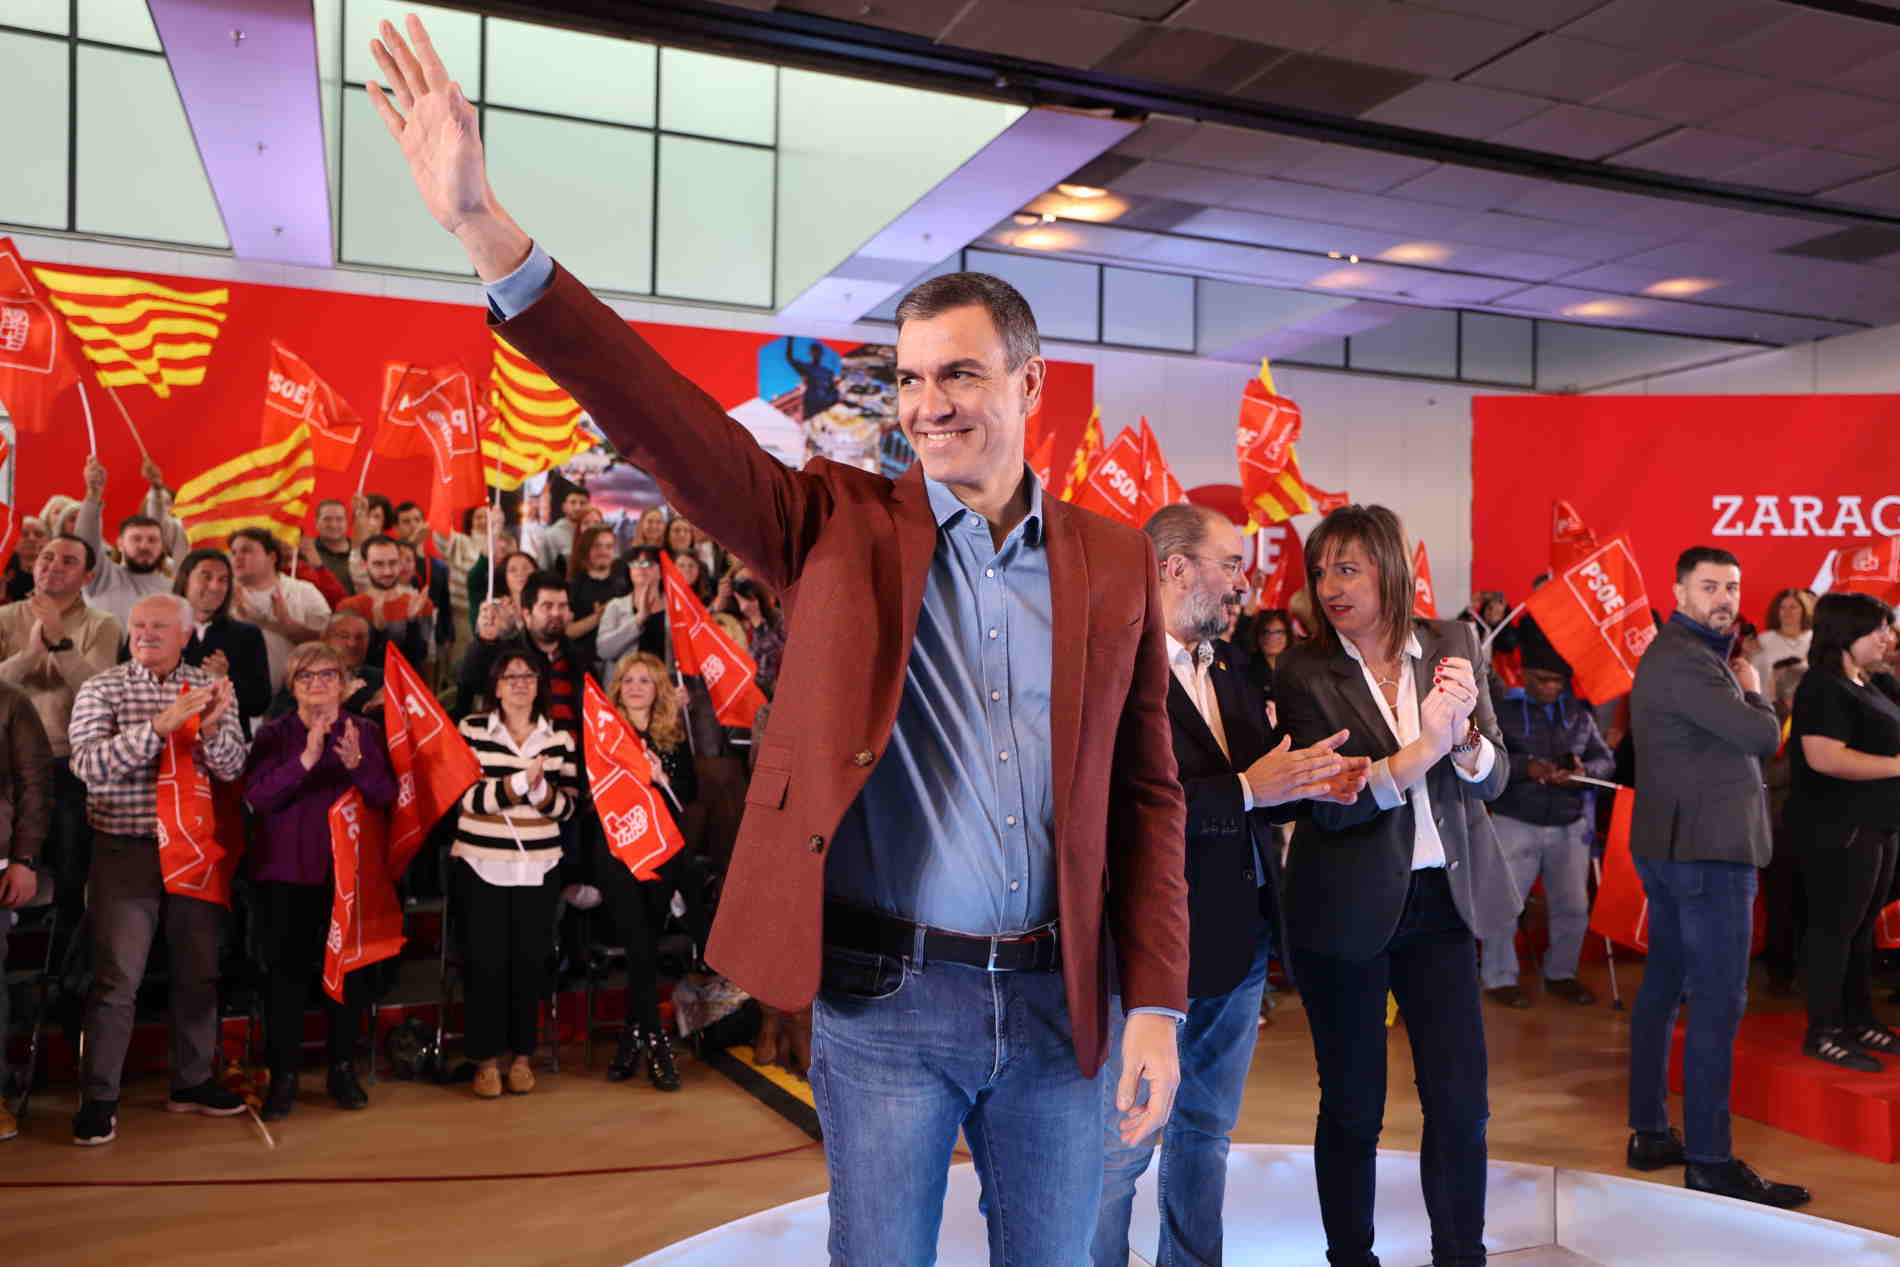 El PSOE escalfa motors de cara al cicle electoral del maig: presenta el lema "Defensa el que penses"